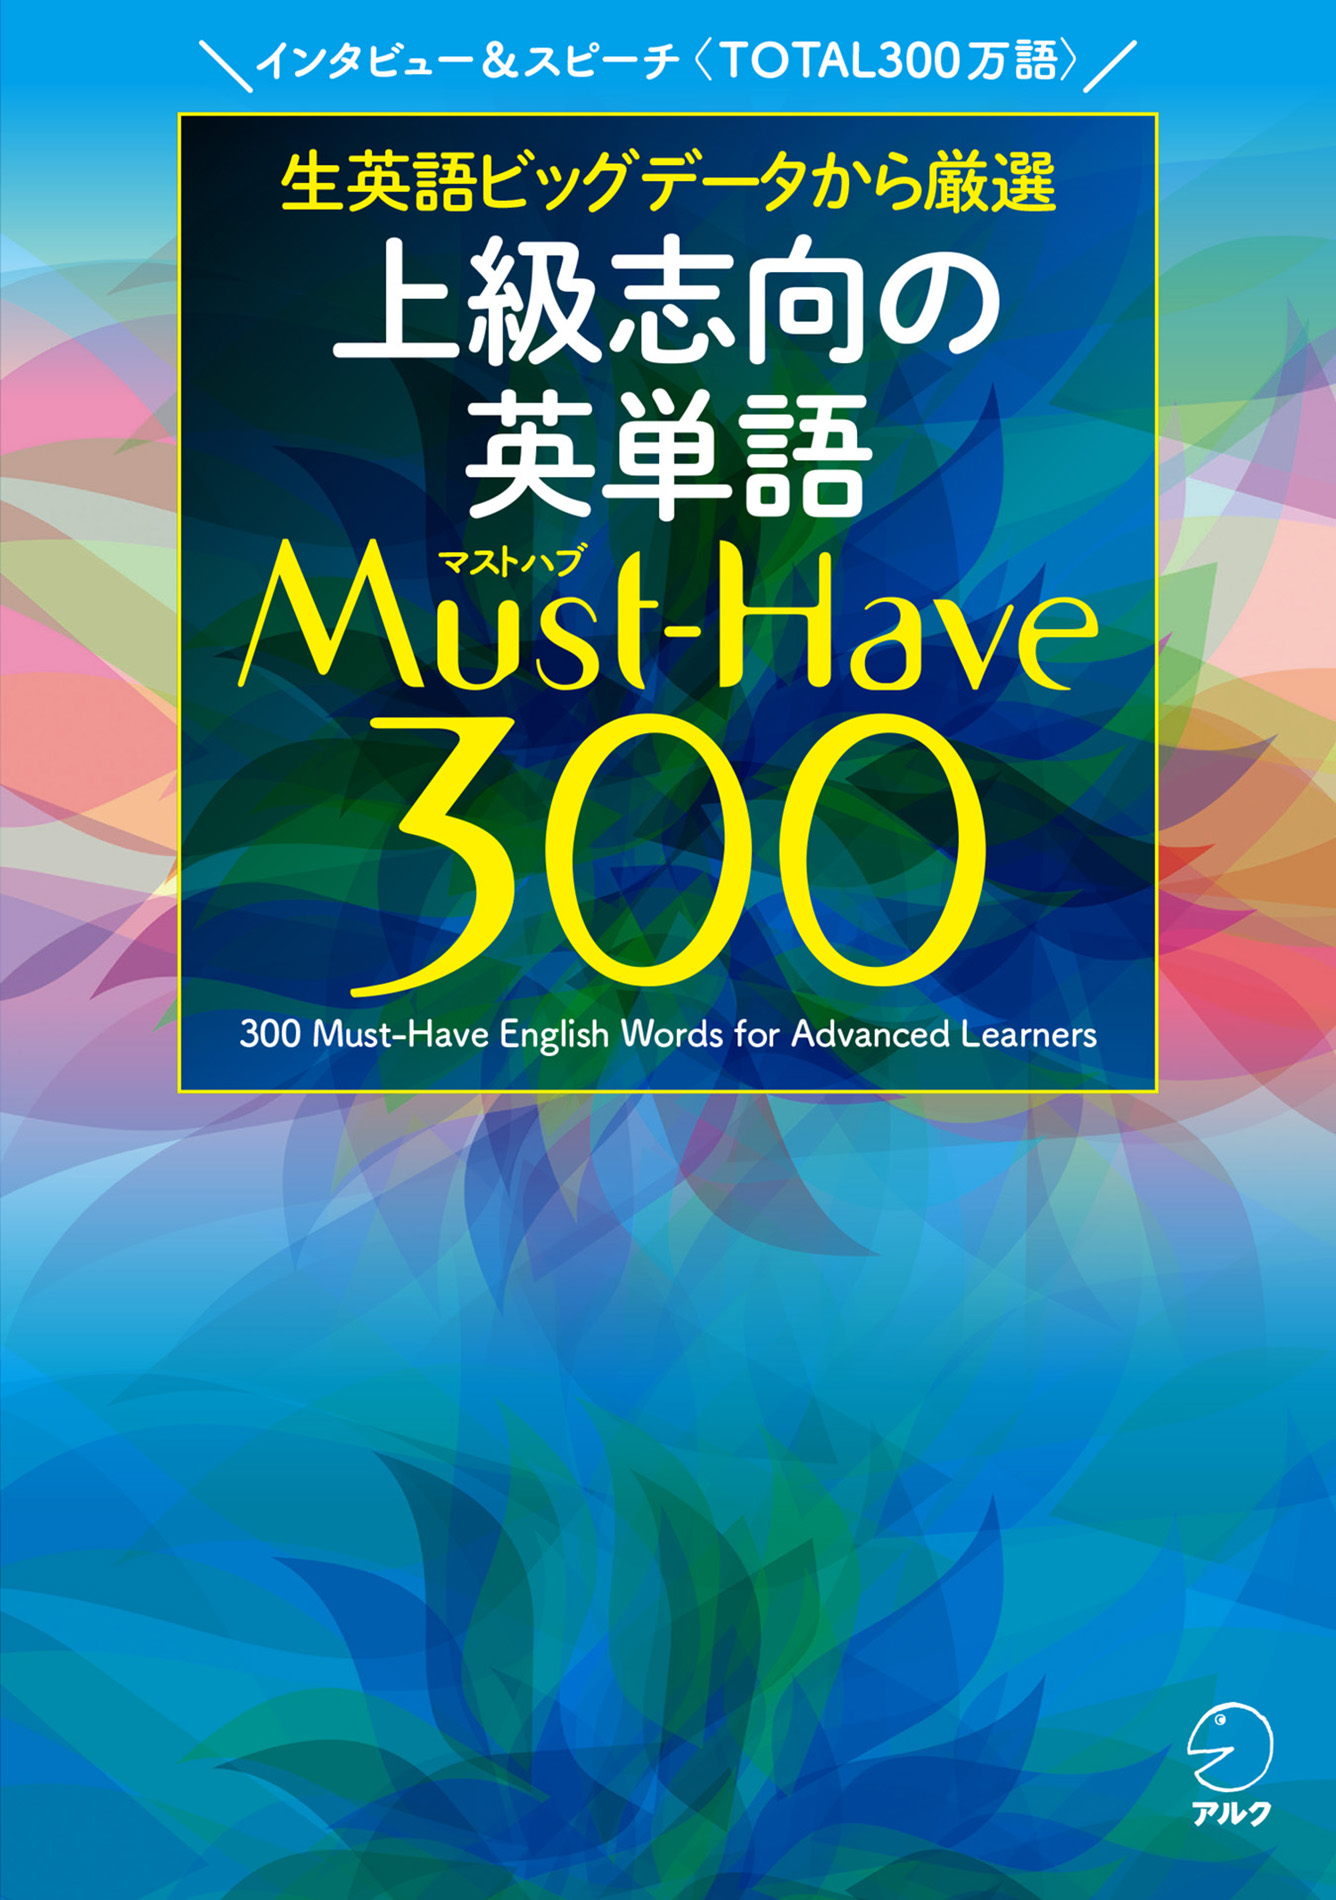 上級志向の英単語 Must-Have (マストハブ) 300 [音声DL付](書籍) - 電子書籍 | U-NEXT 初回600円分無料